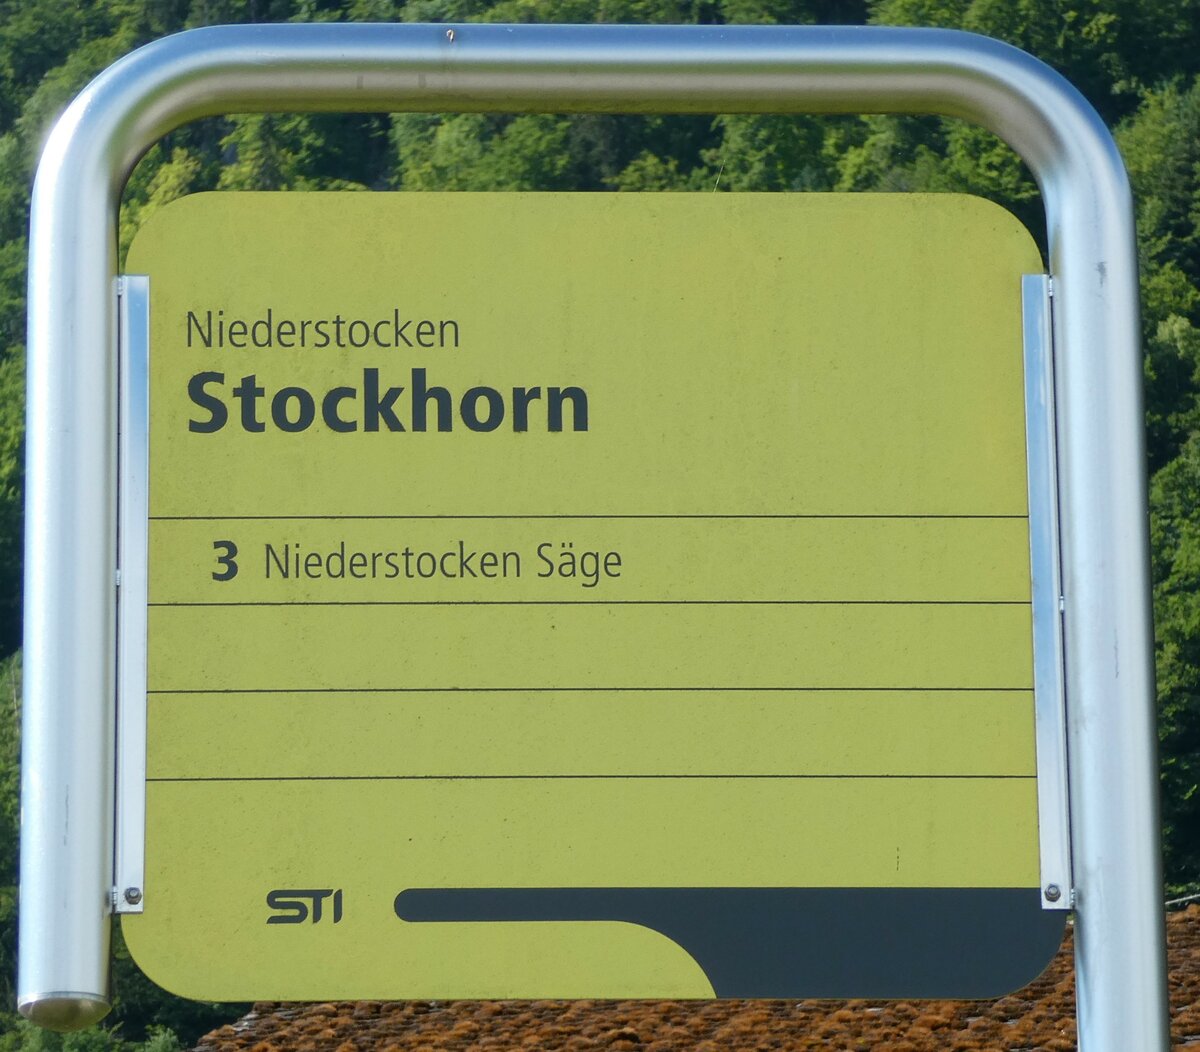 (237'546) - STI-Haltestellenschild - Niederstocken, Stockhorn - am 26. Juni 2022